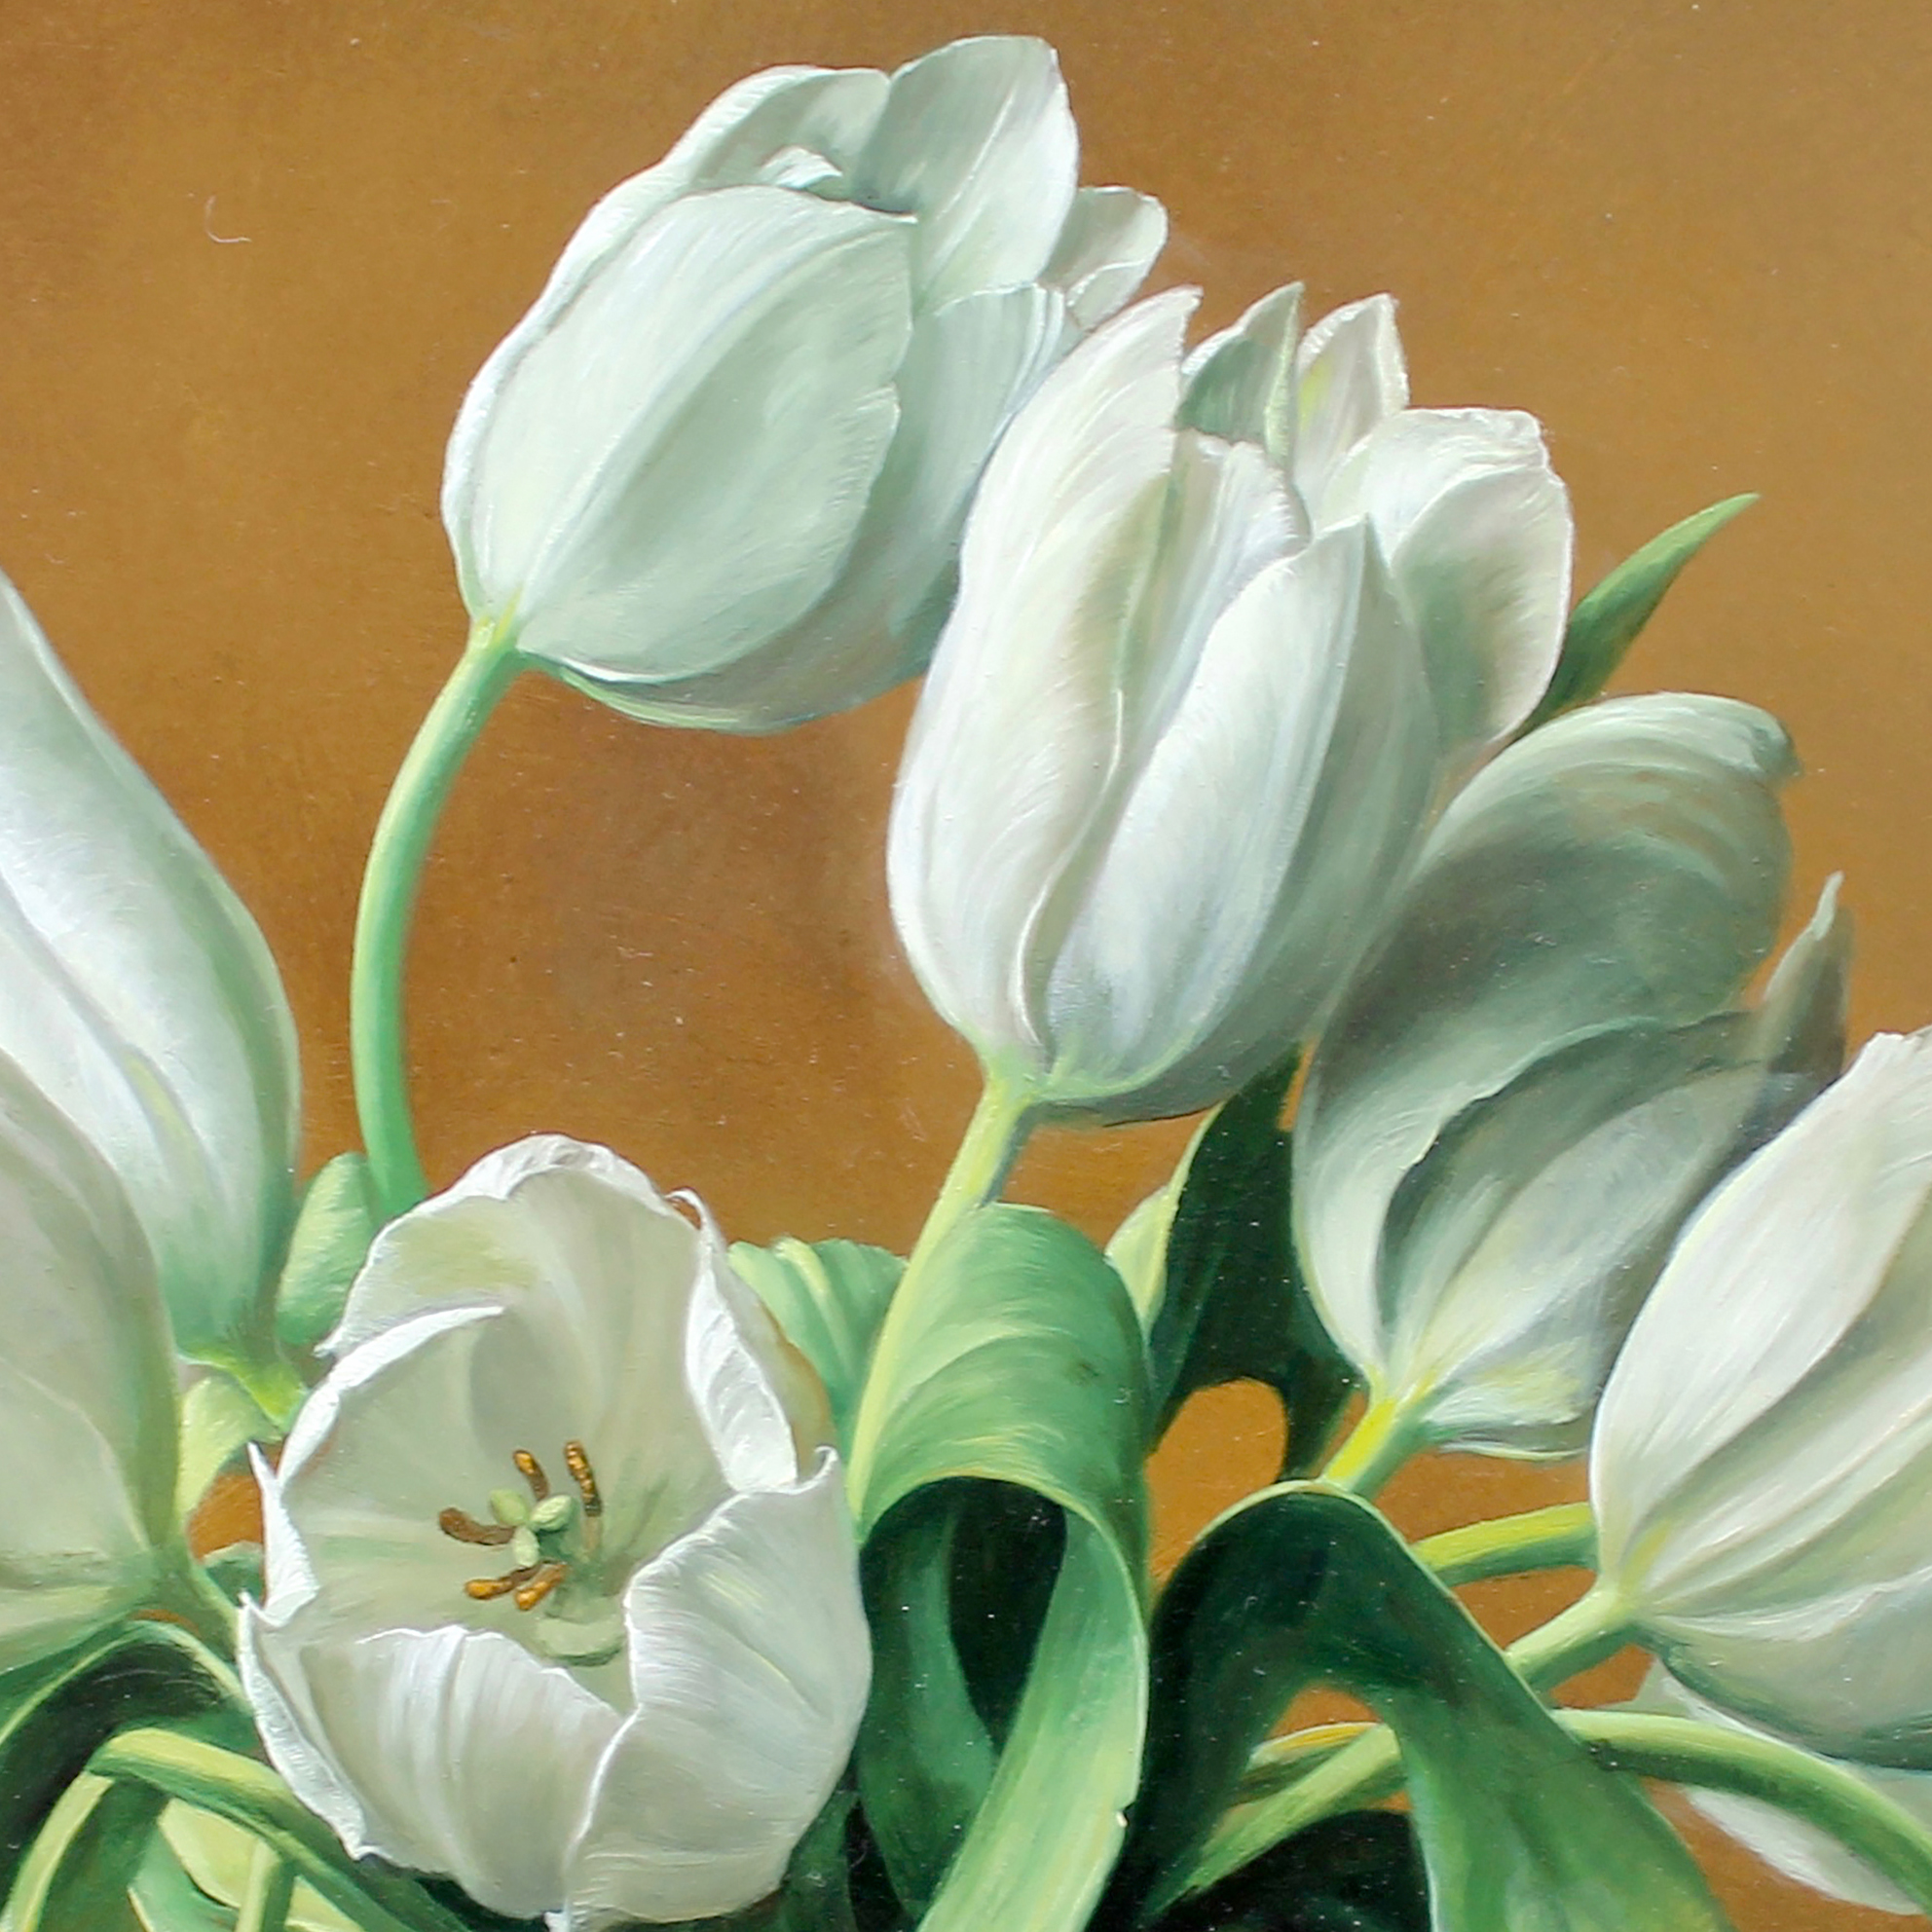 Những bông hoa tulip trắng trong này thật tuyệt đẹp và thu hút sự chú ý của mọi người. Bạn sẽ bị cuốn hút bởi sắc trắng ngà tinh tế của hoa và cảm nhận được sự tuyệt vời của thiên nhiên trong từng nét vẽ đầy tinh tế.